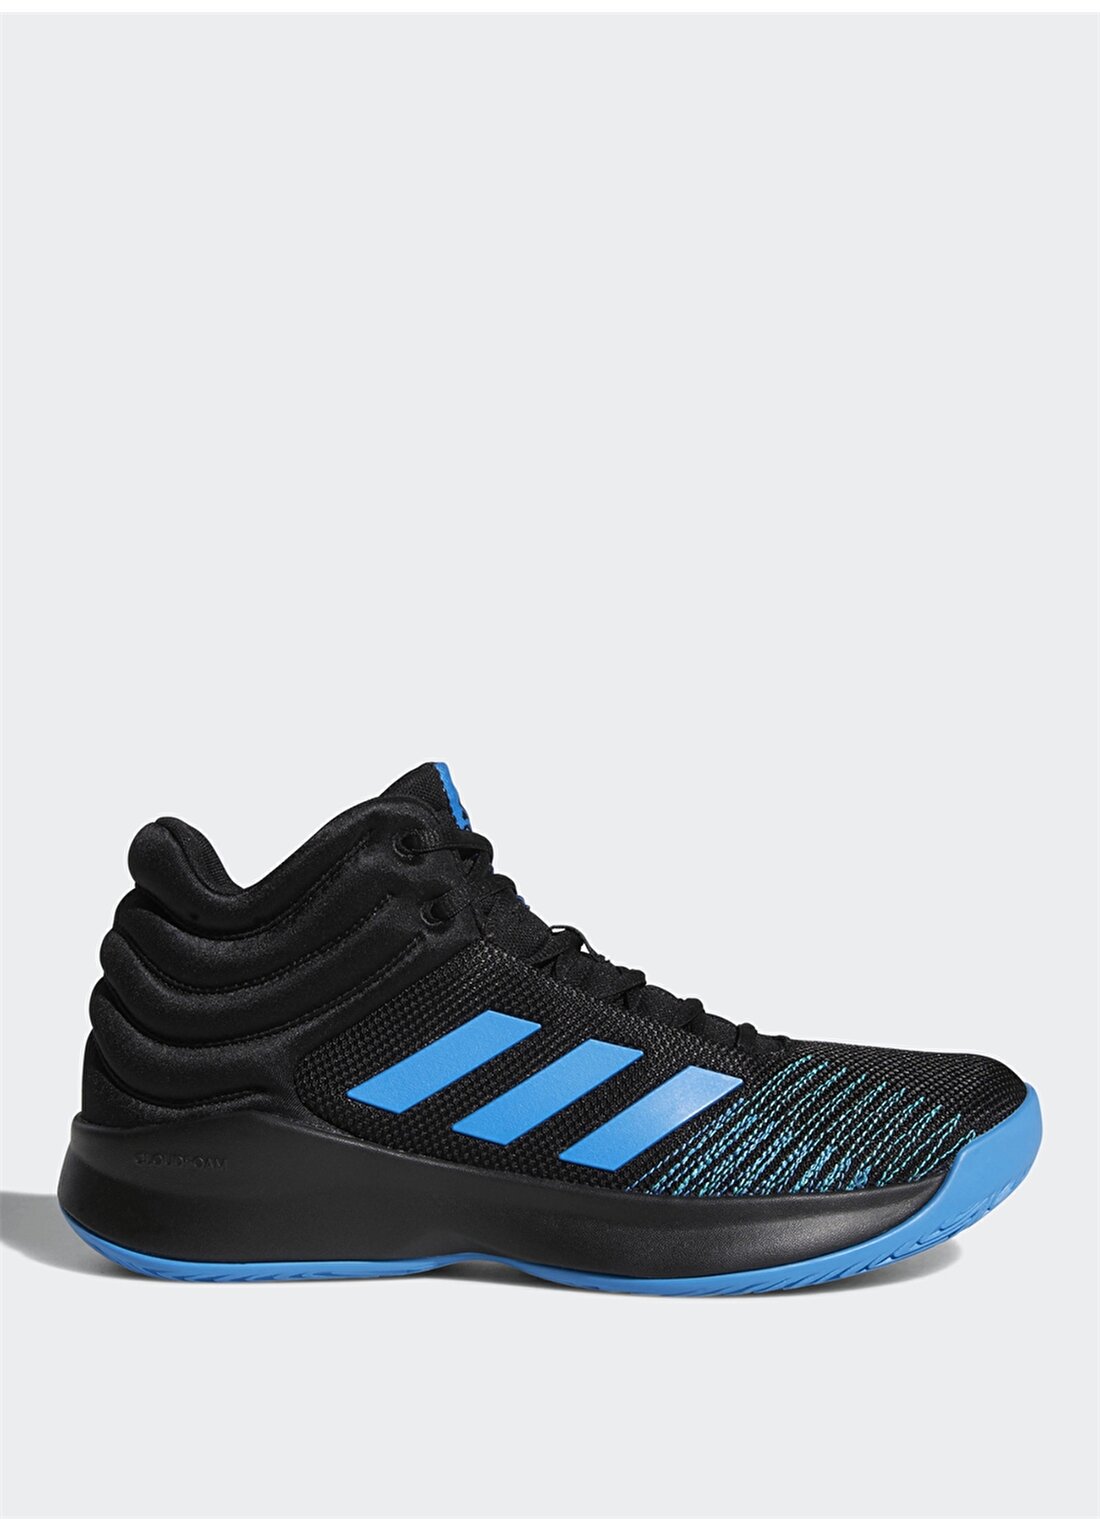 Adidas Pro Spark 2018 Basketbol Ayakkabısı